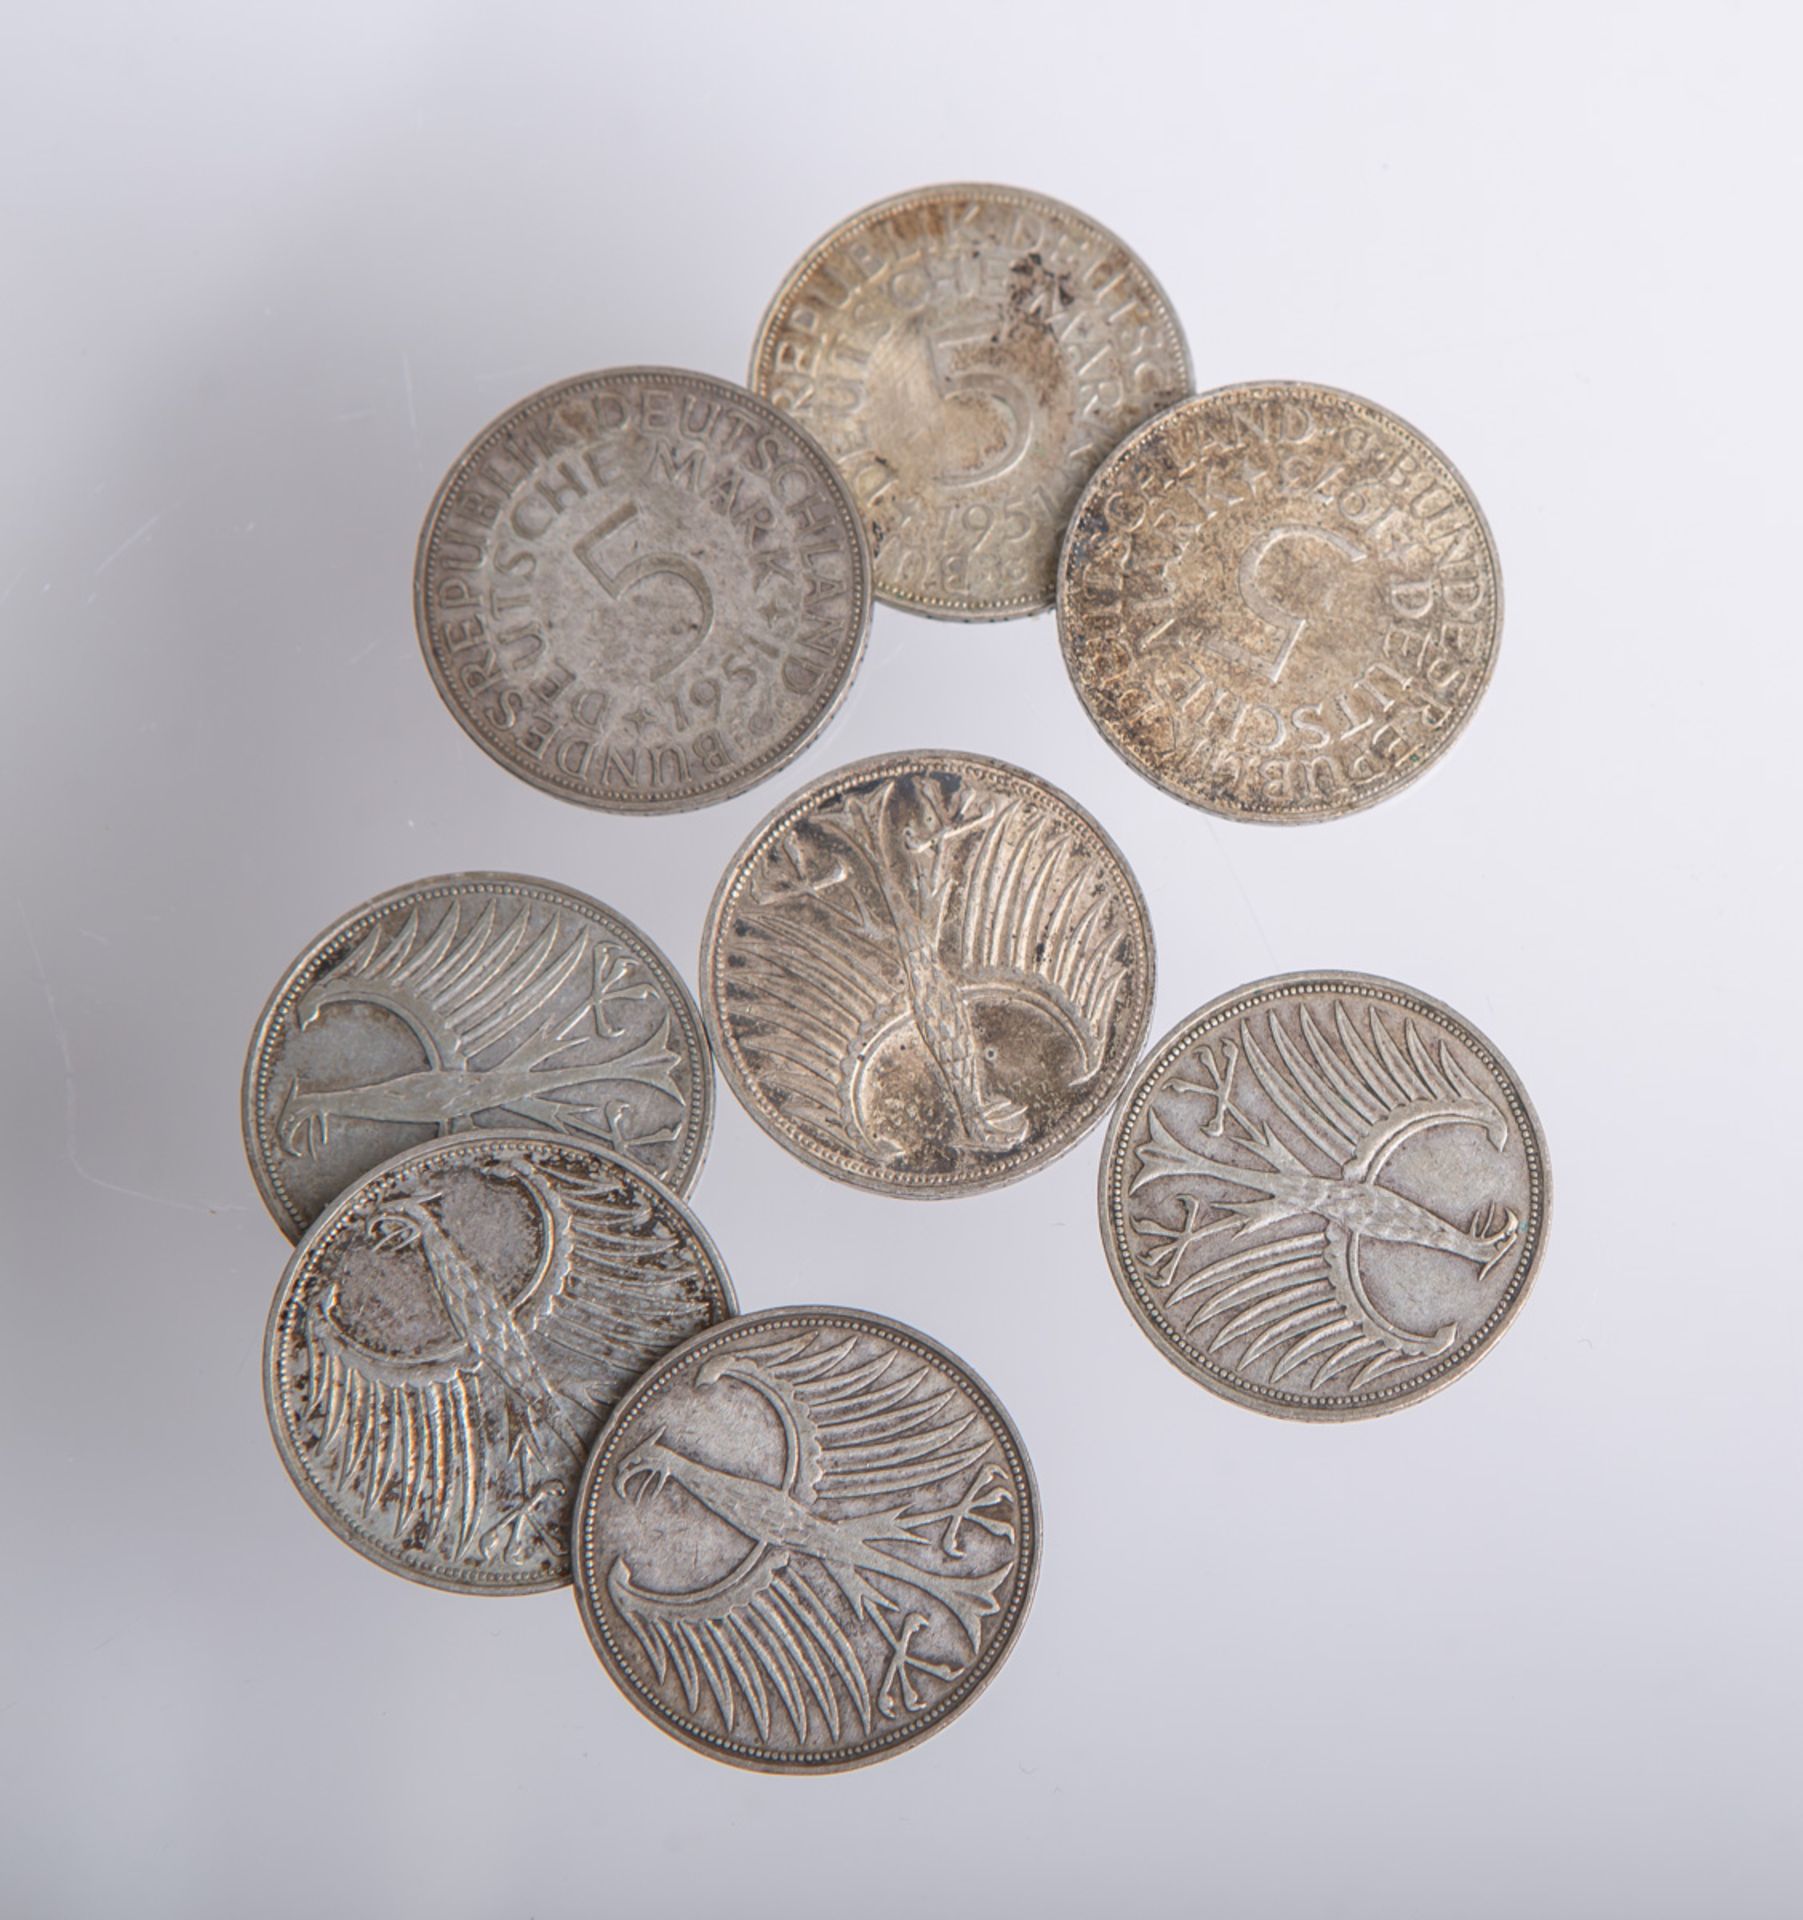 Konvolut von 5-DM-Münzen, sog. Silberadler (BRD), 8 Stück - Image 2 of 2